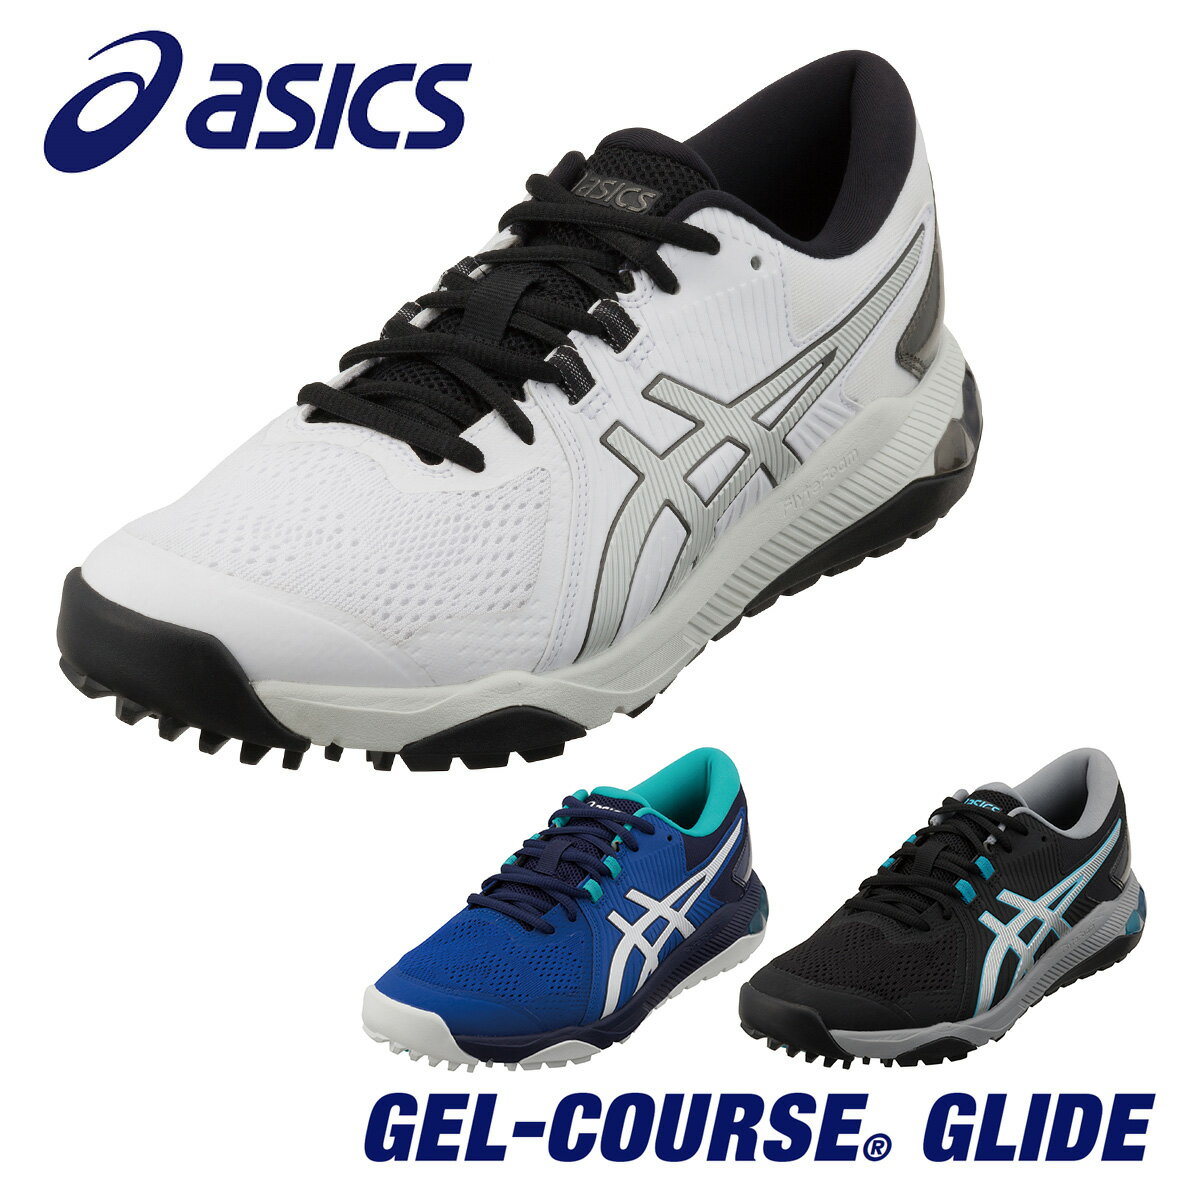 ASICS アシックス正規品 GEL-COURSE GLIDE (ゲルコース グライド) スパイクレス ゴルフシューズ 「 1111A085 」 【あす楽対応】 1